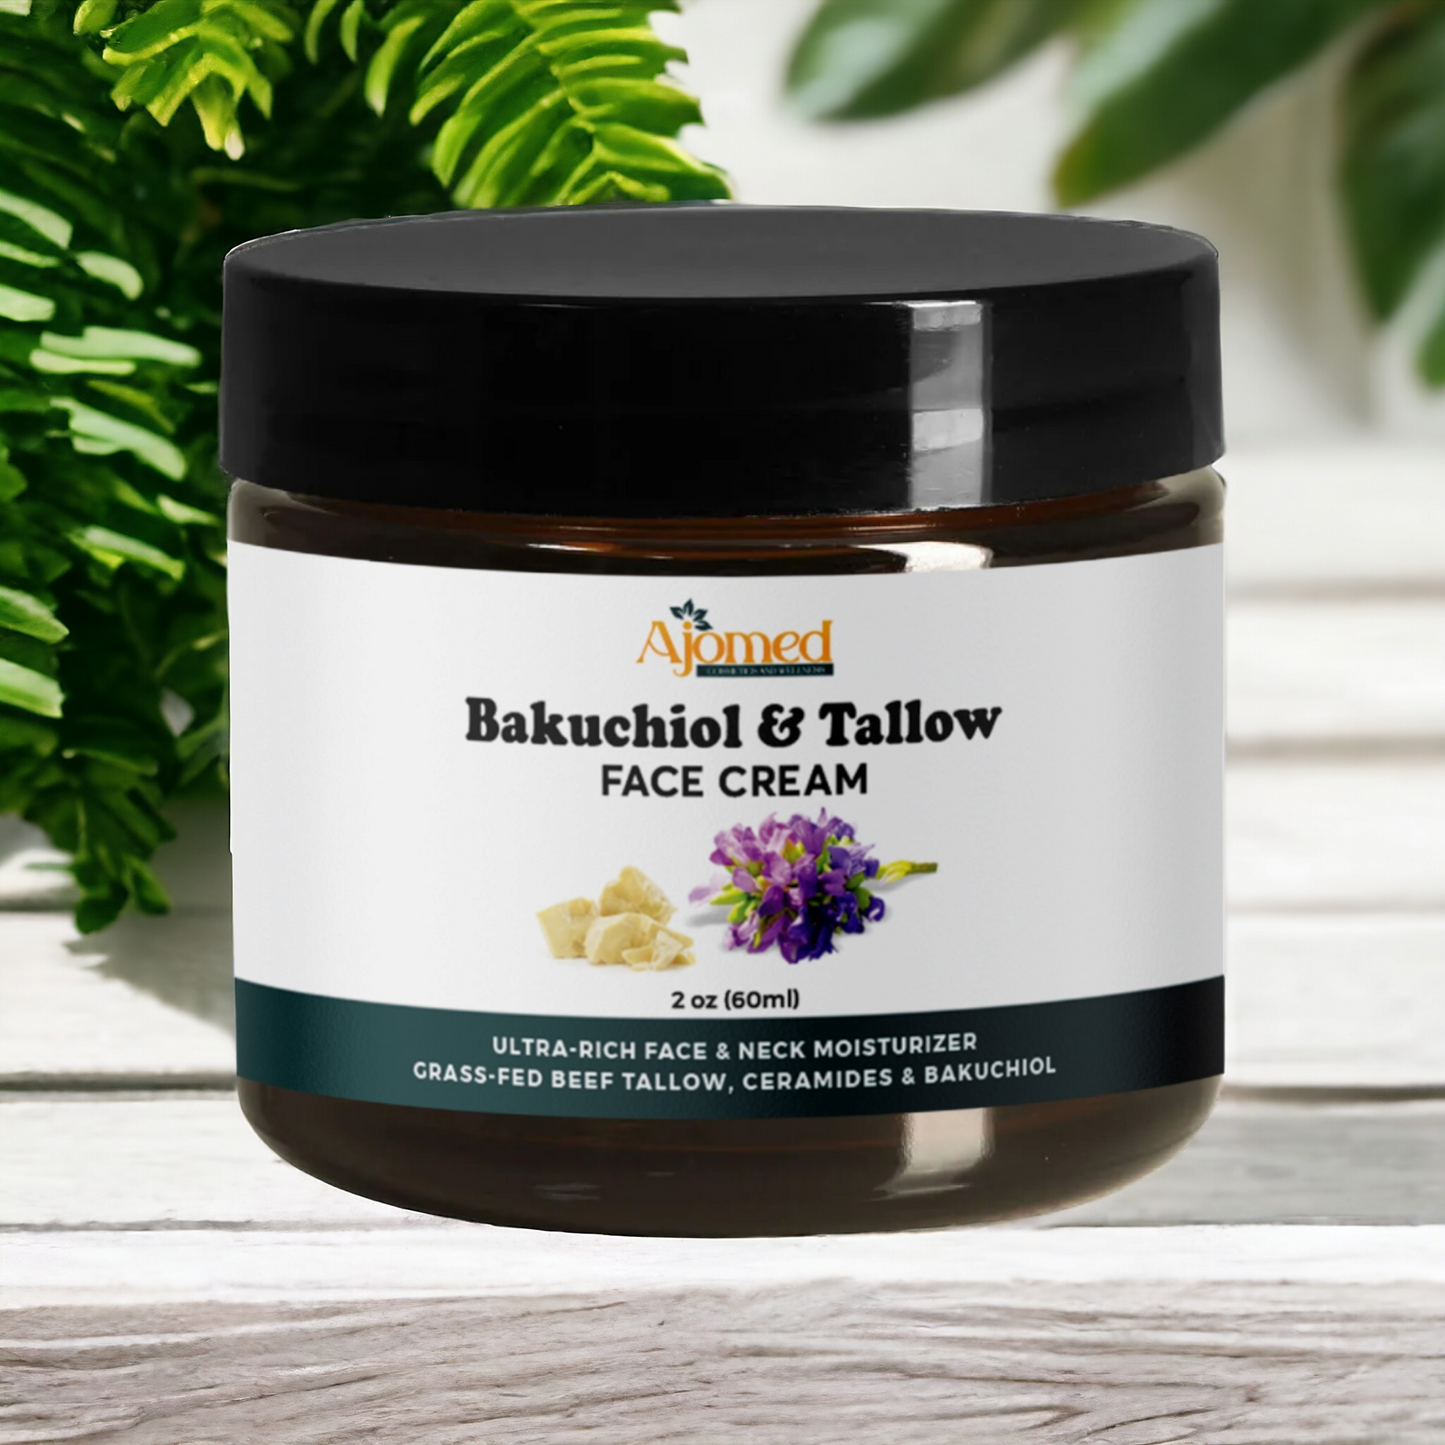 Beef tallow face cream with 2% Bakuchiol oil face moisturizer- Handmade natural retinol 2oz